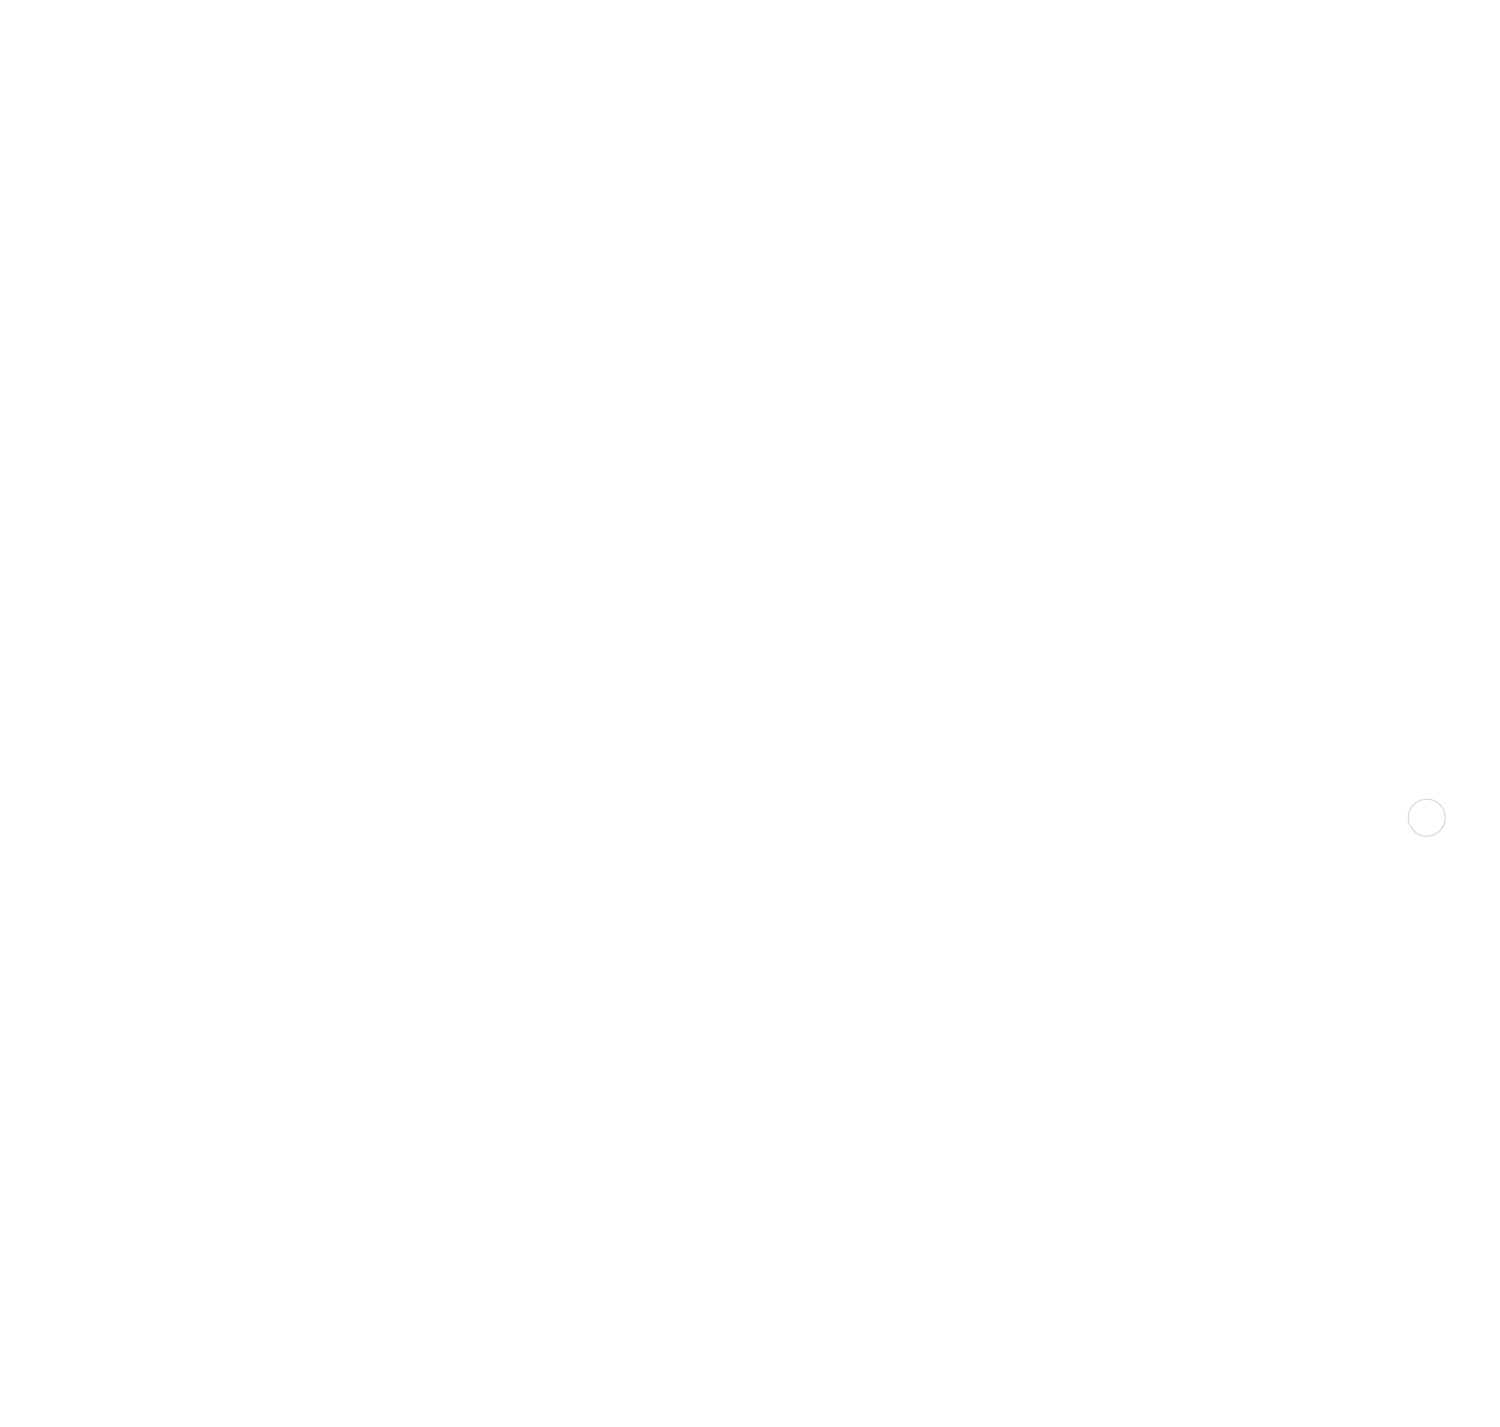 Consorzio di Porto Rotondo